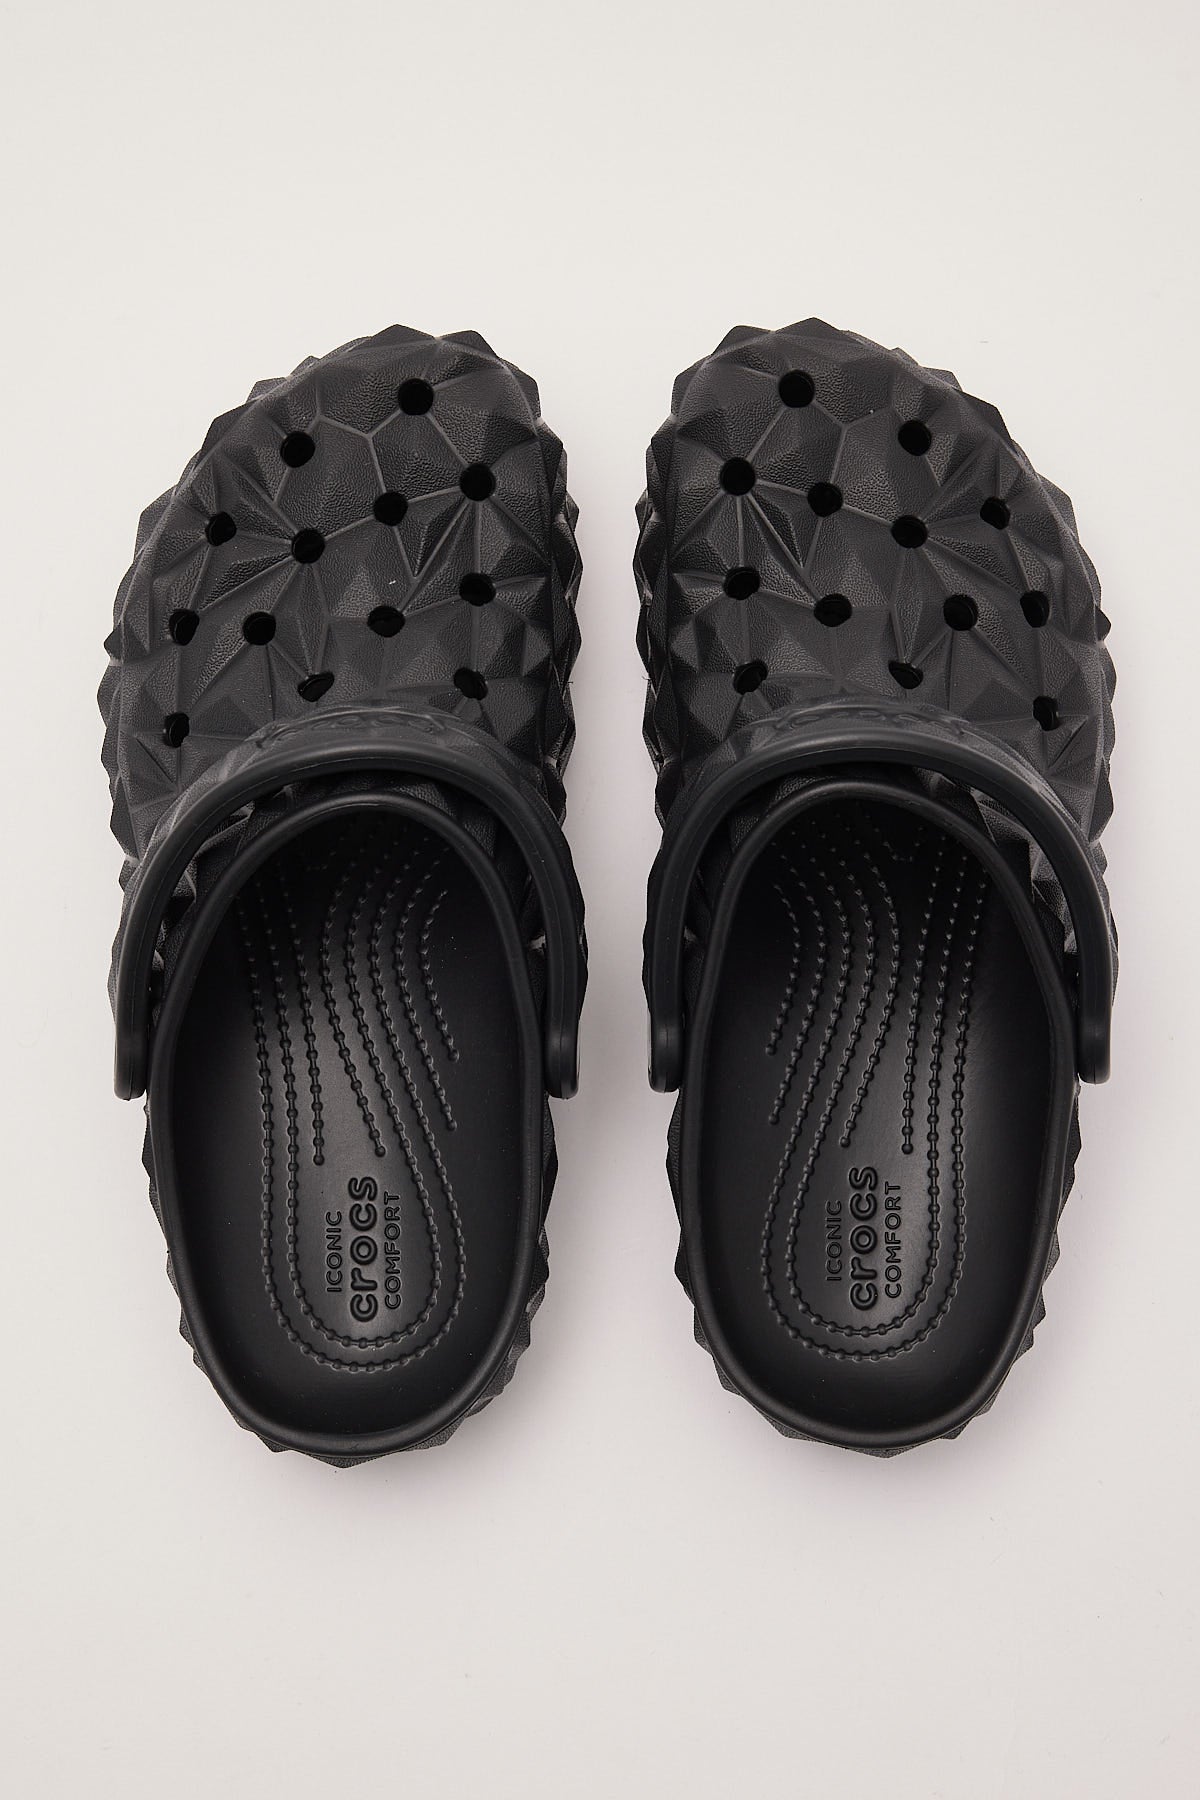 Crocs Classic Geometric Clog Black